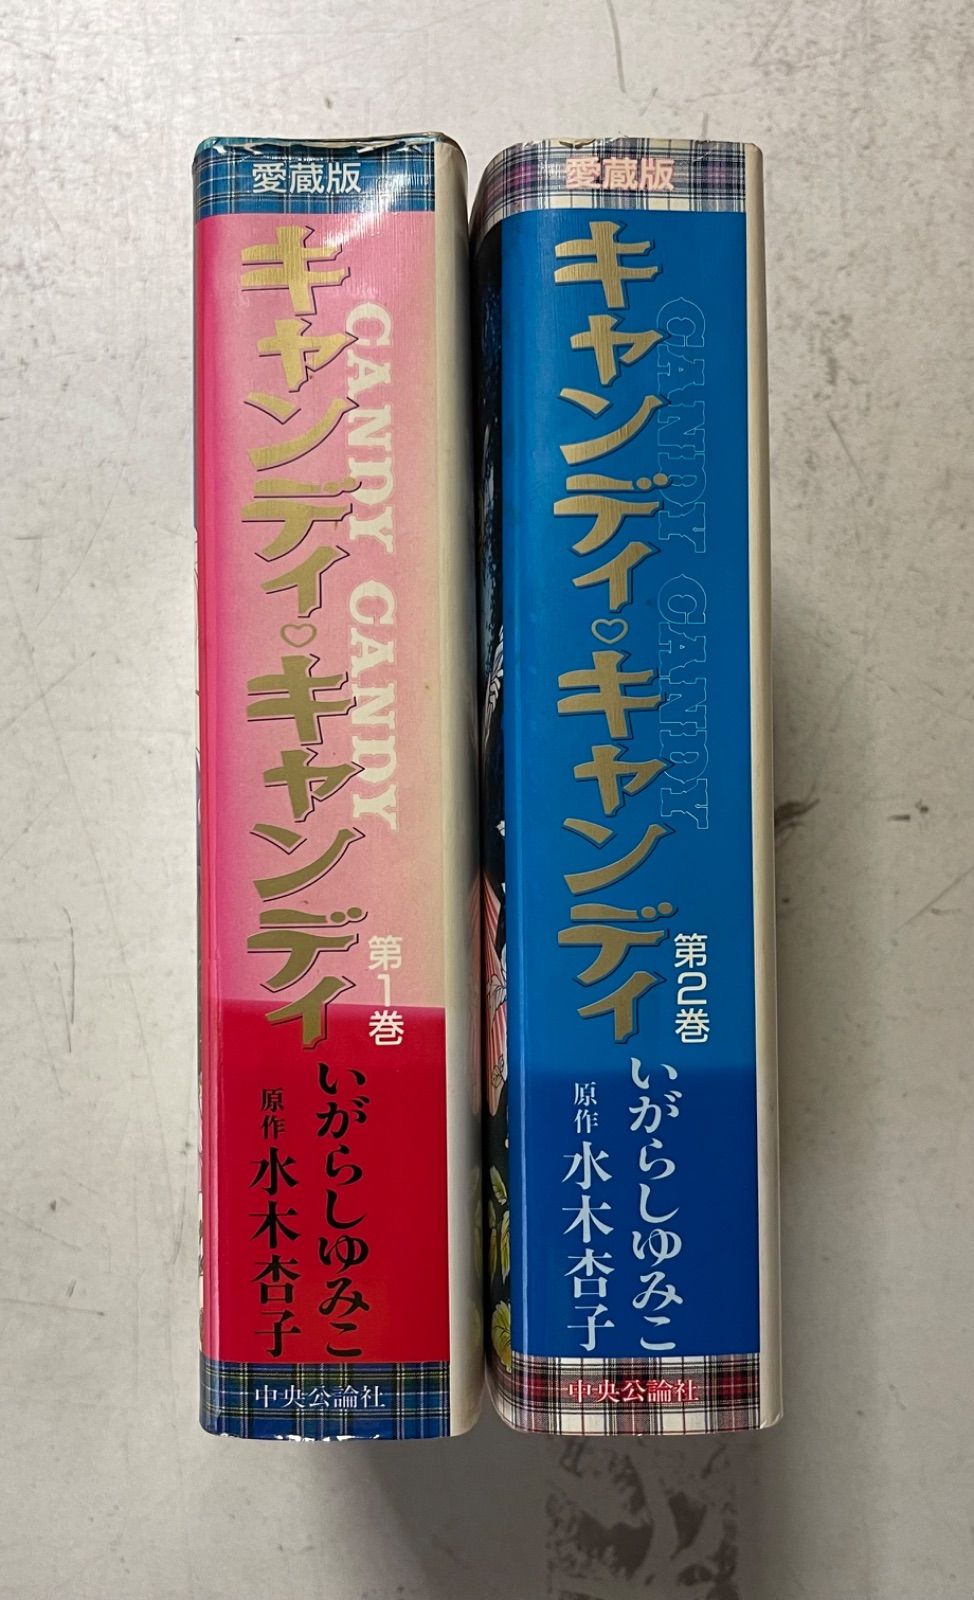 キャンディ・キャンディ キャンディキャンディ 愛蔵版 全2巻完結セット ...